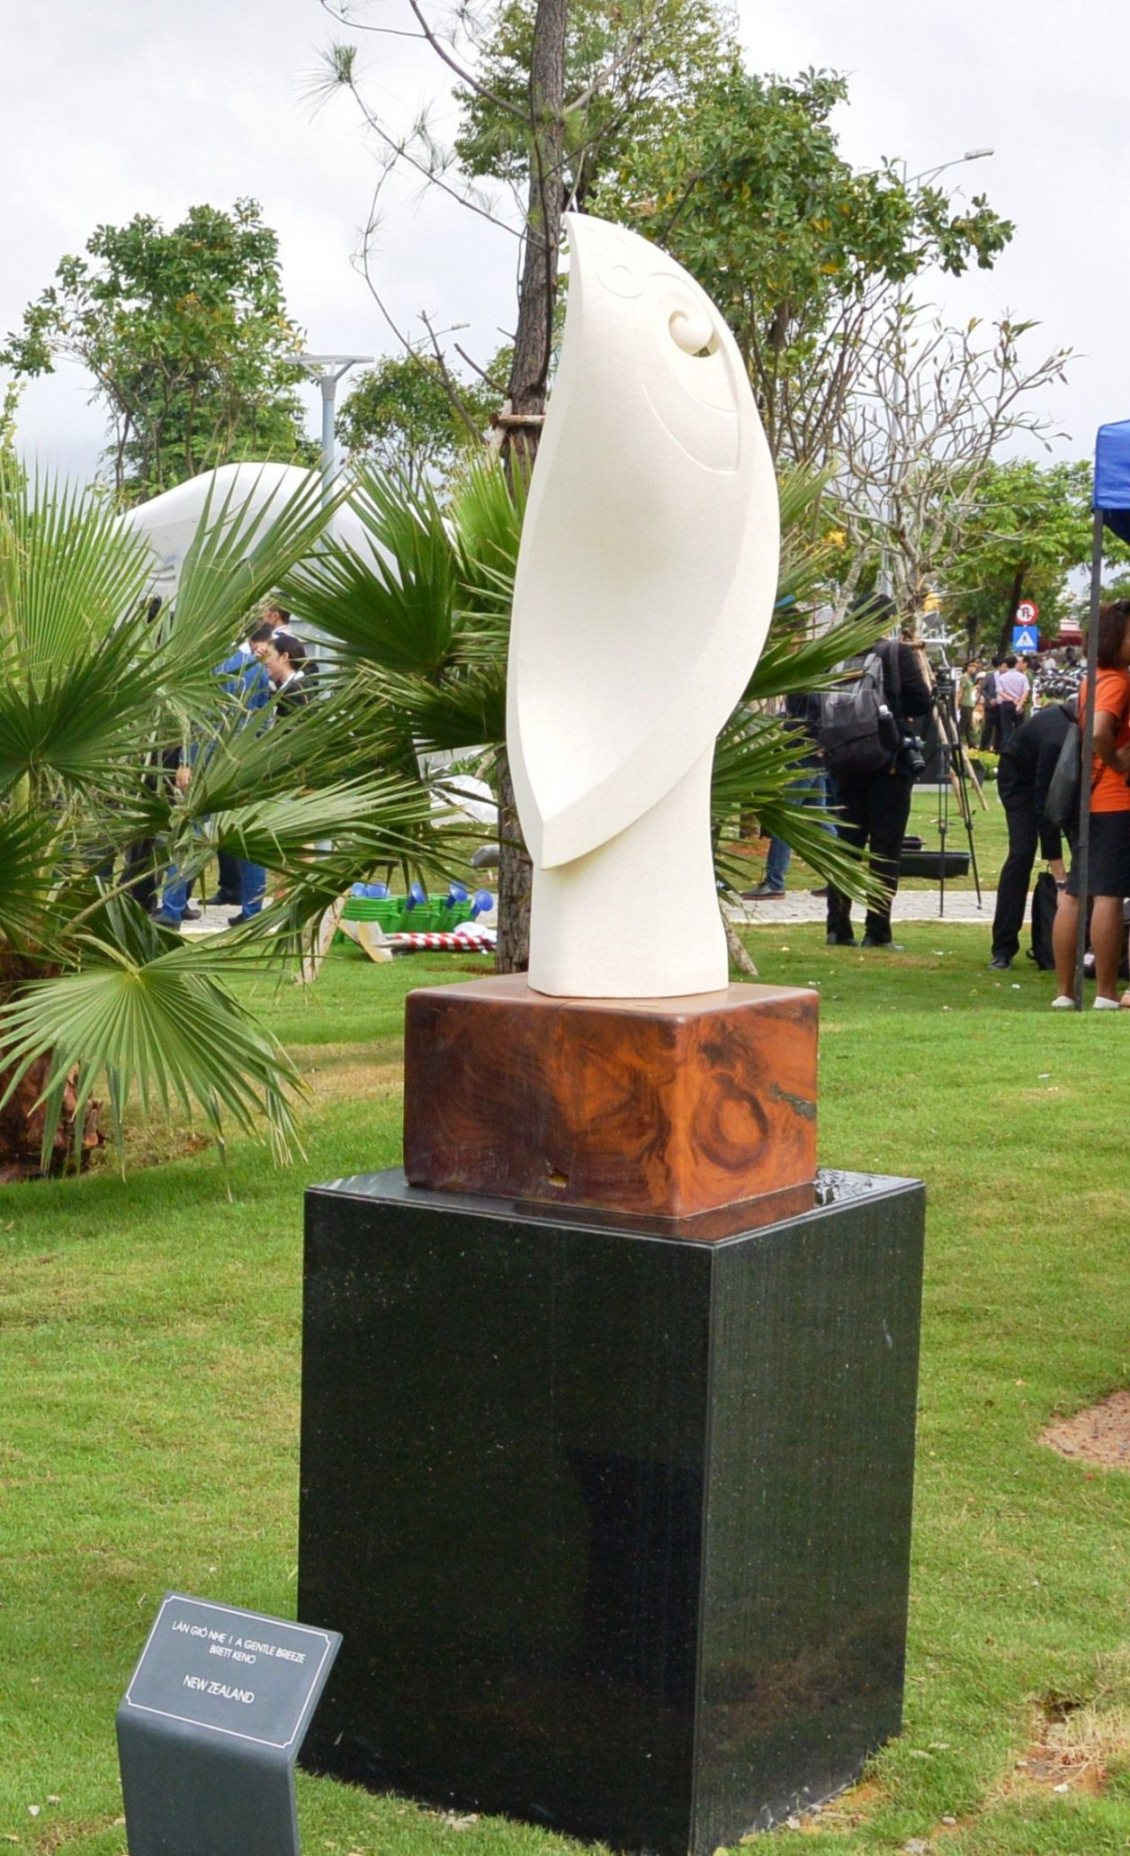 Tác phẩm điêu khắc của nền kinh tế New Zealand “Làn gió nhẹ”